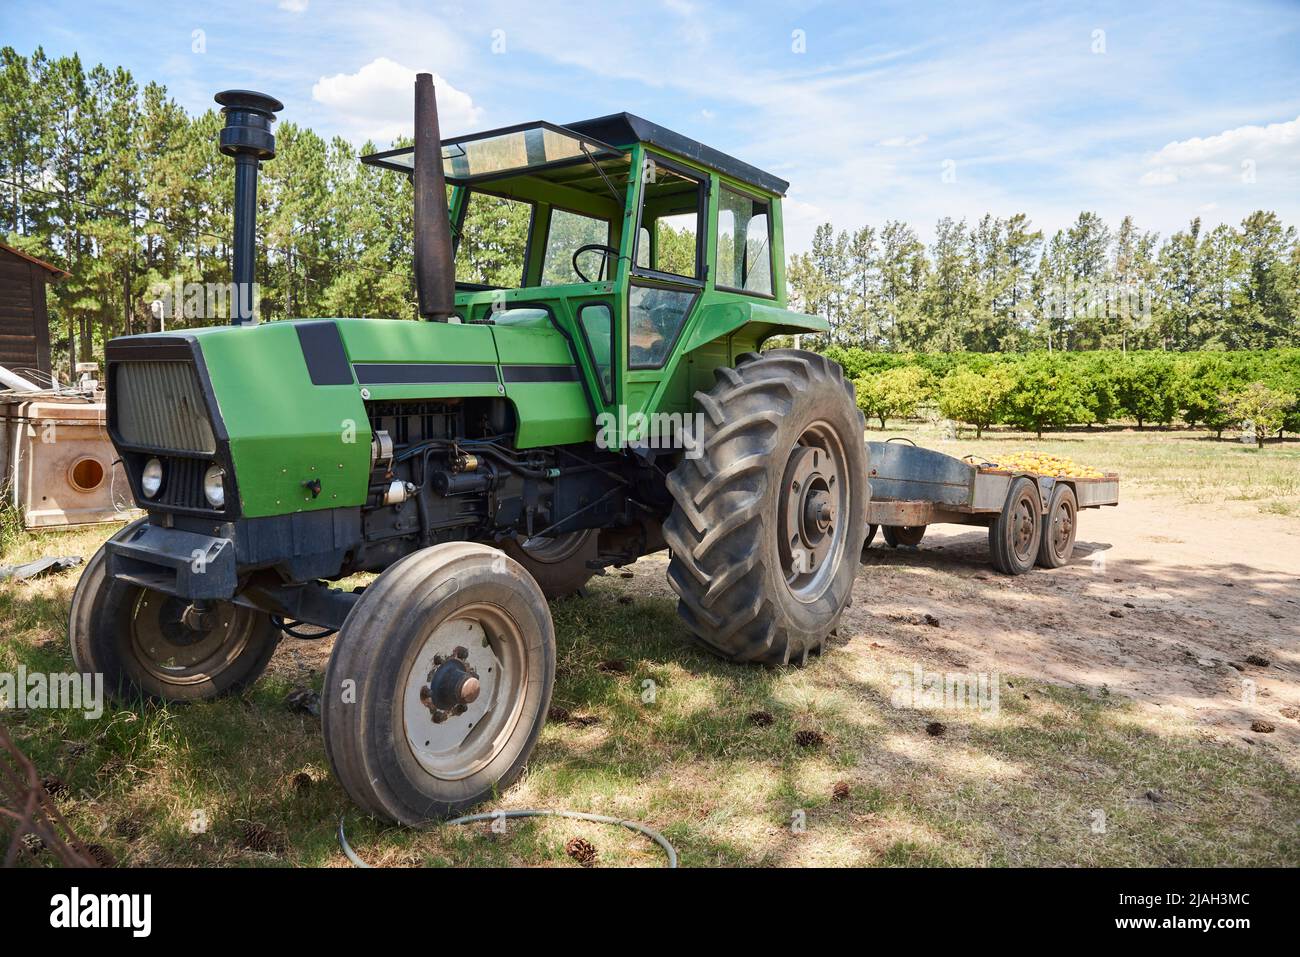 Tractor verde junto a un campo naranja durante el verano, imagen representativa de la agricultura y el mundo rural. Foto de stock